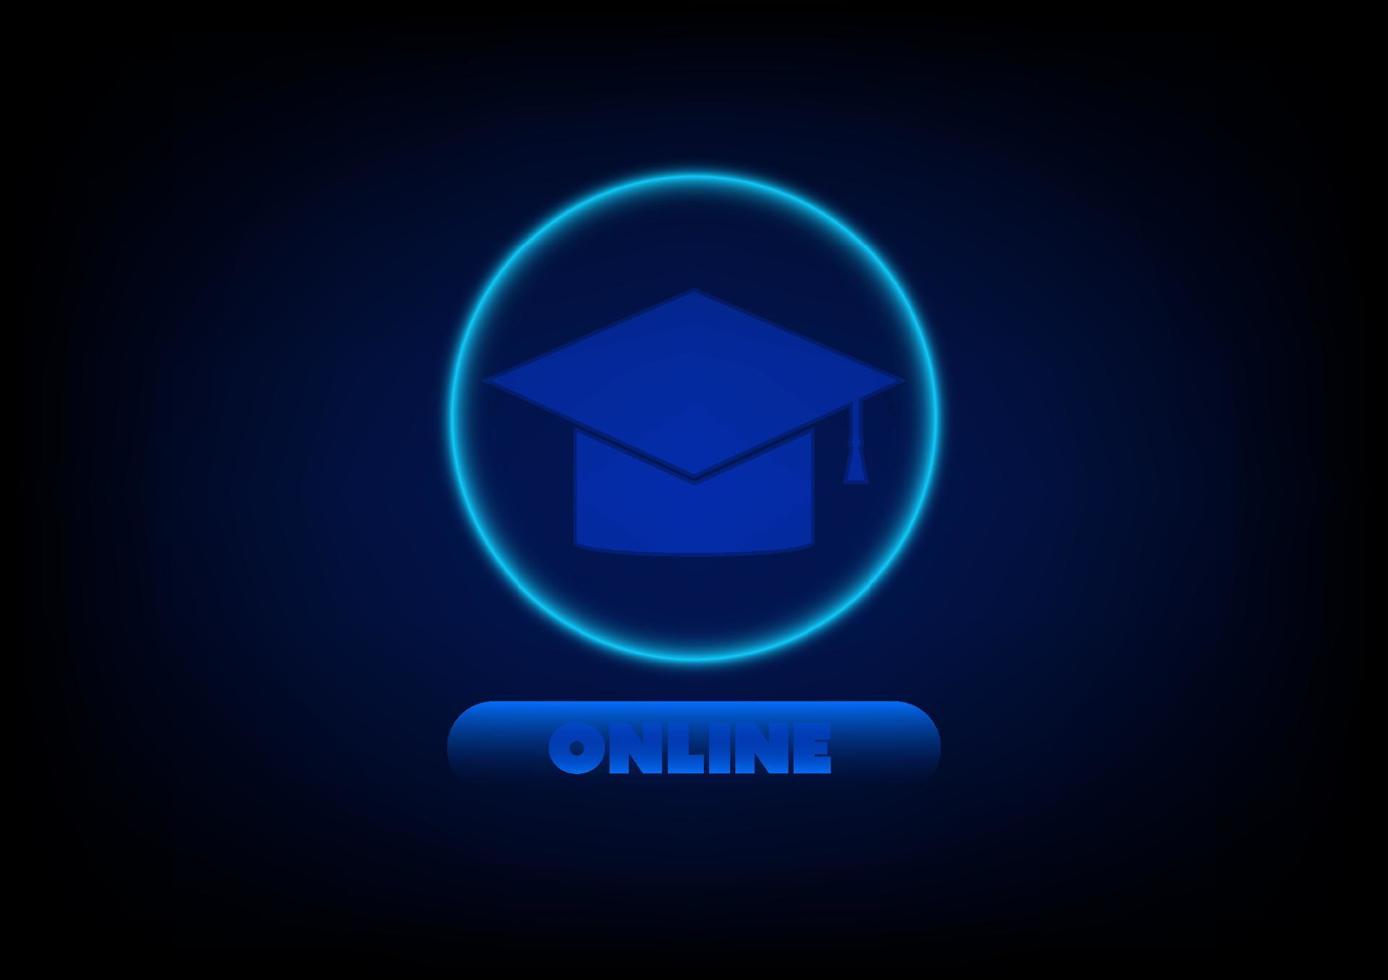 Mortarboard mit Knopf und Online-Text und Lichtring auf blauem Hintergrund. Bildung oder Online-Kurs, E-Learning. zu Hause lernen. vektor